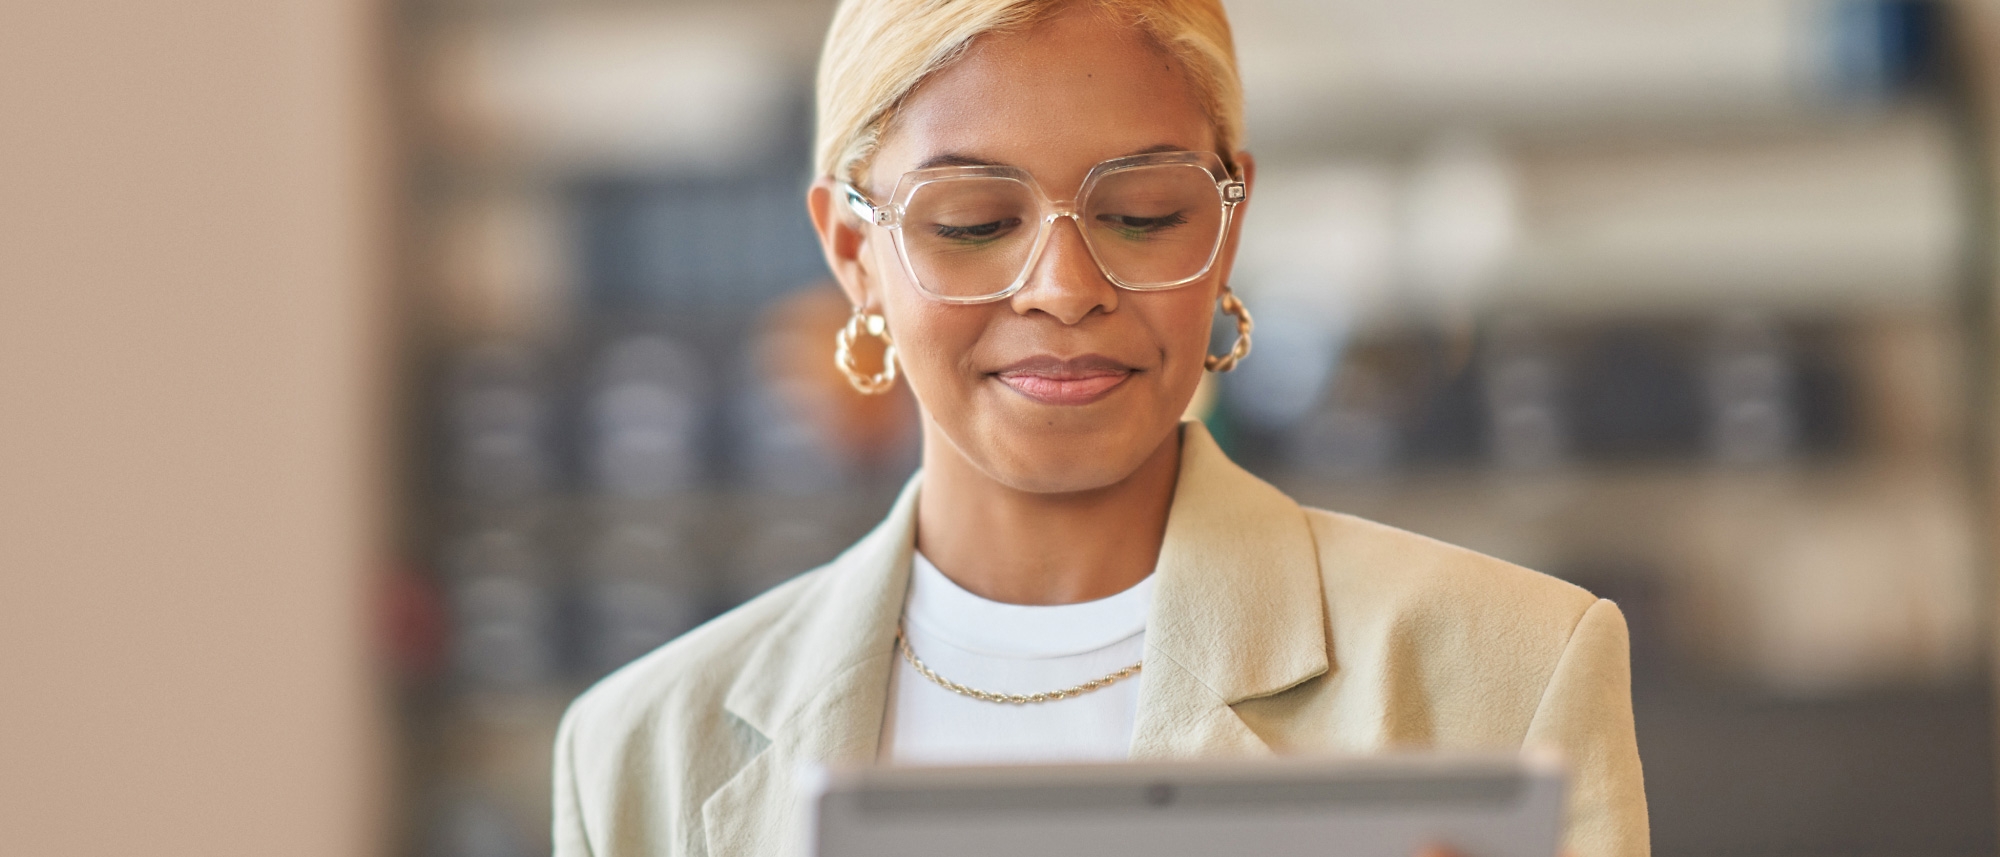 Una mujer profesional con gafas y una chaqueta de color marrón claro lee algo en su tableta en un entorno de oficina moderna.